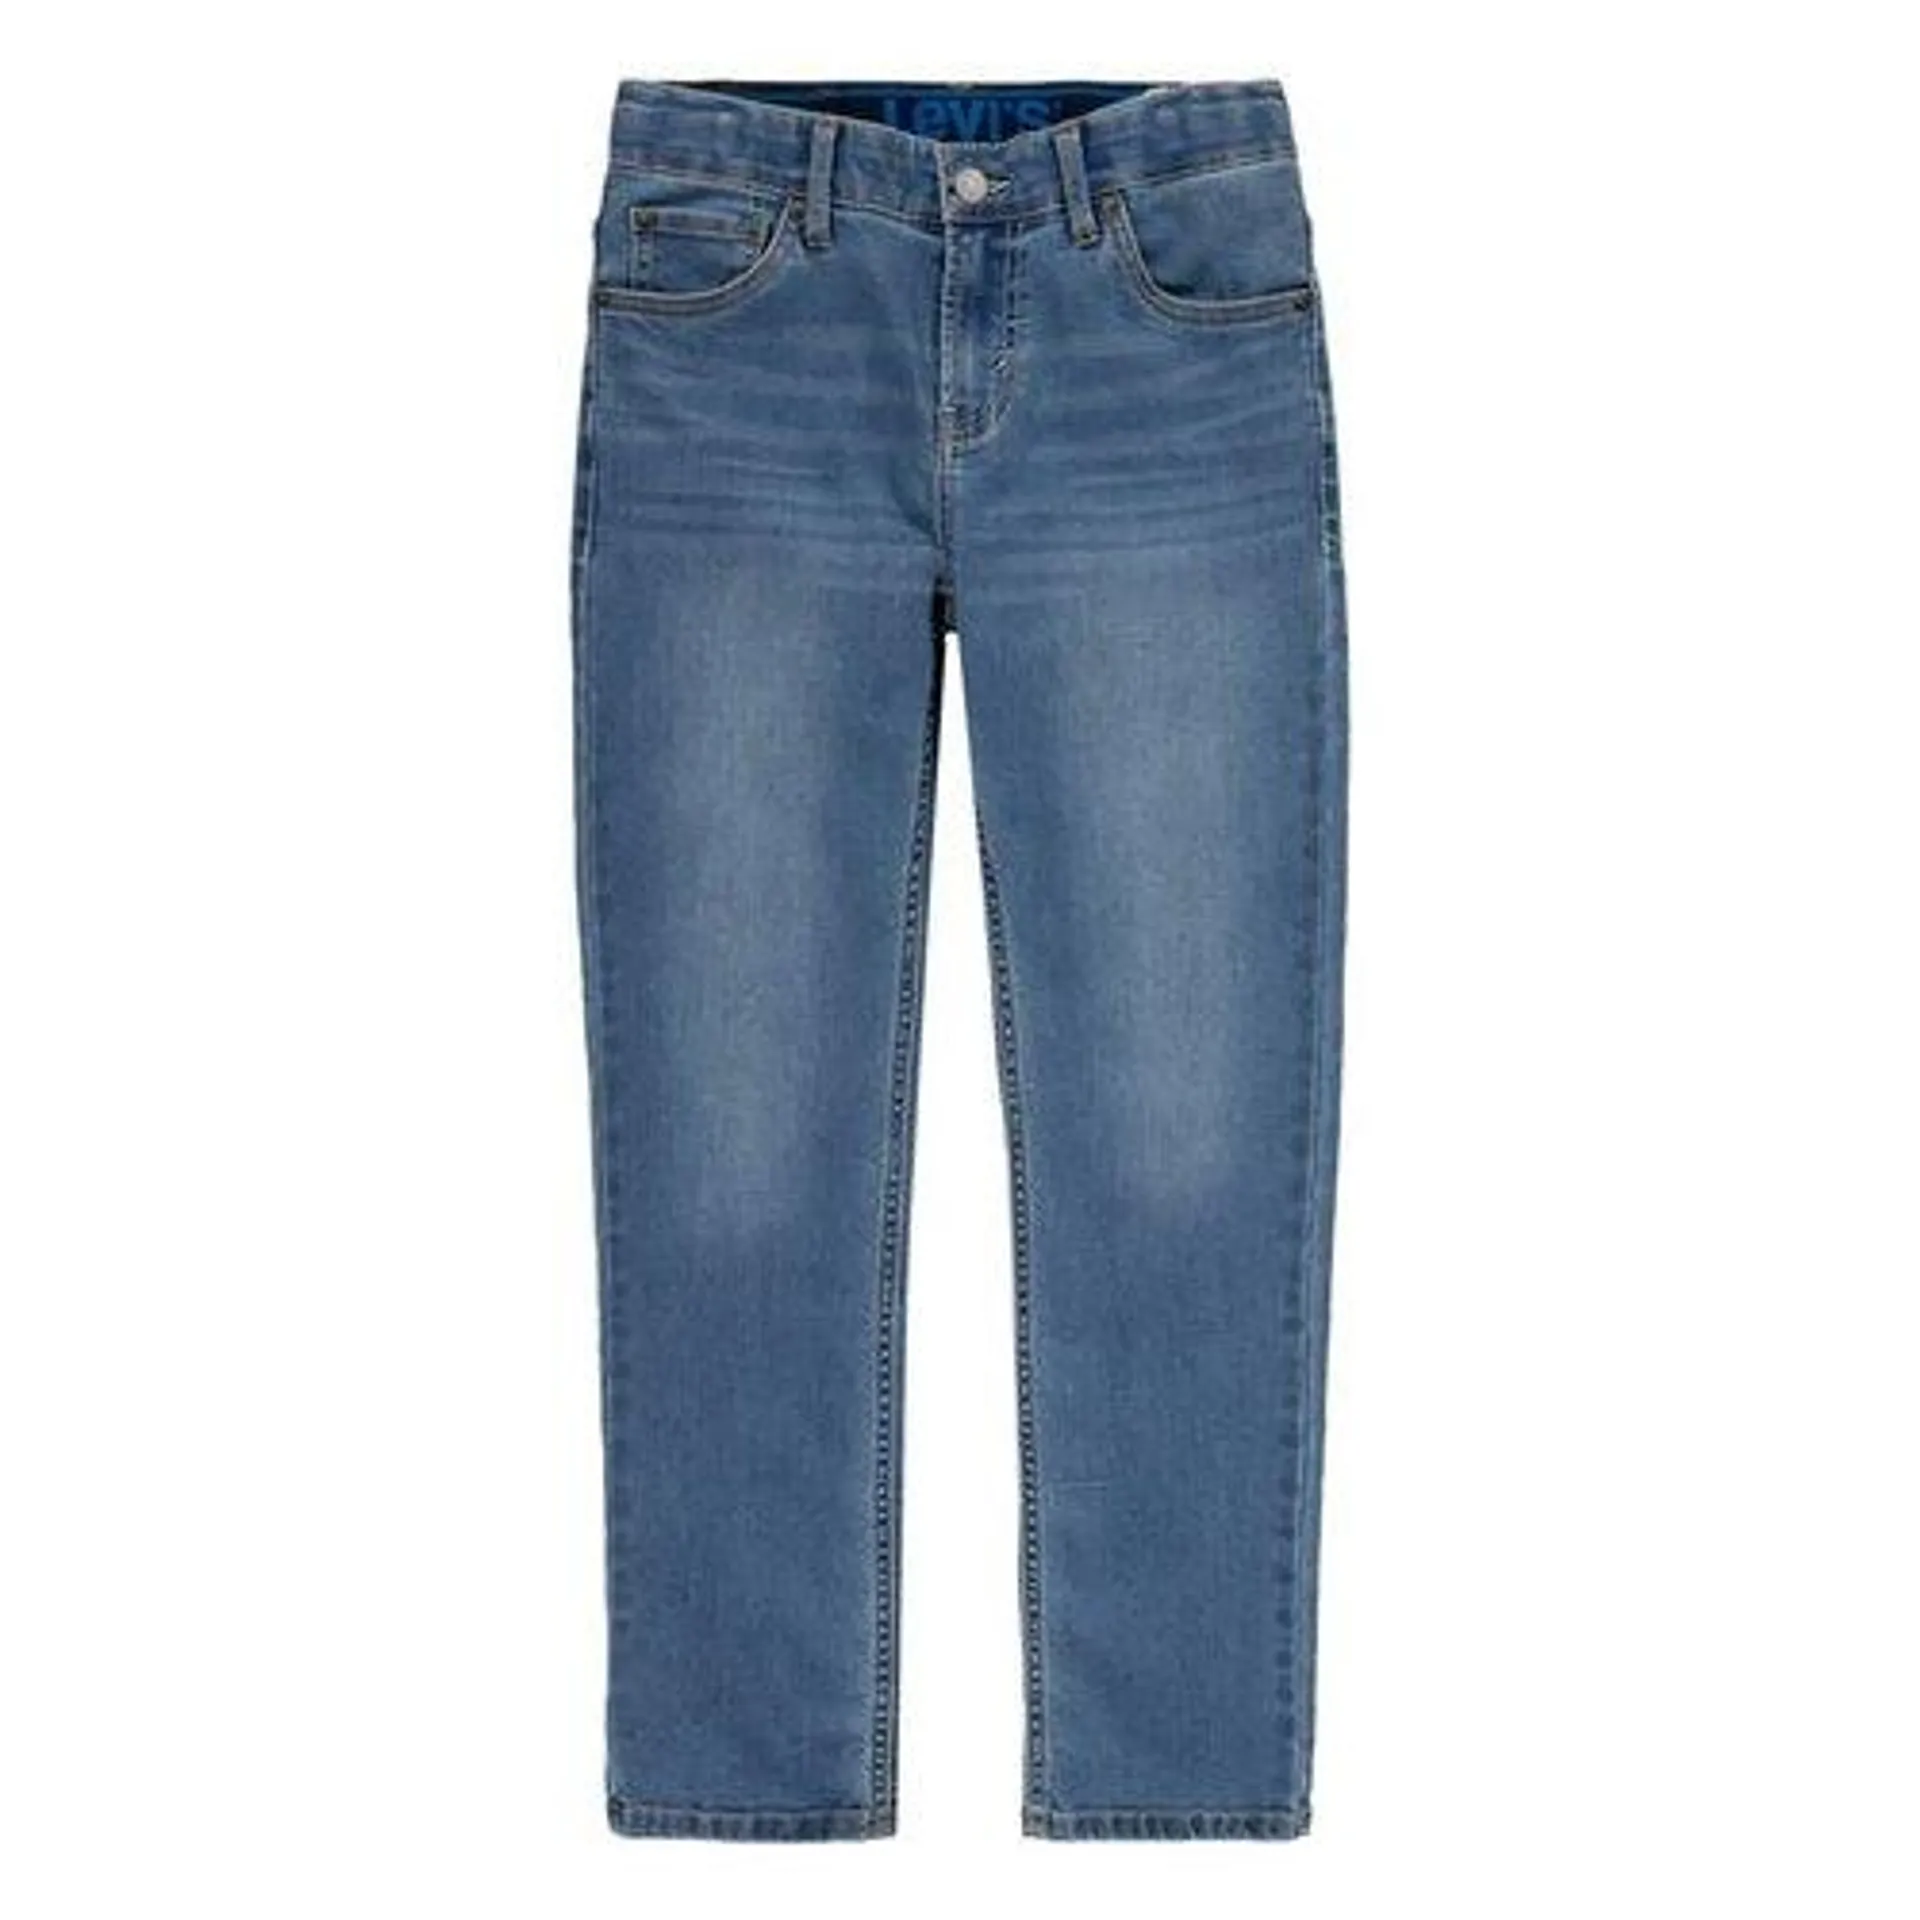 Jeans direitos 502